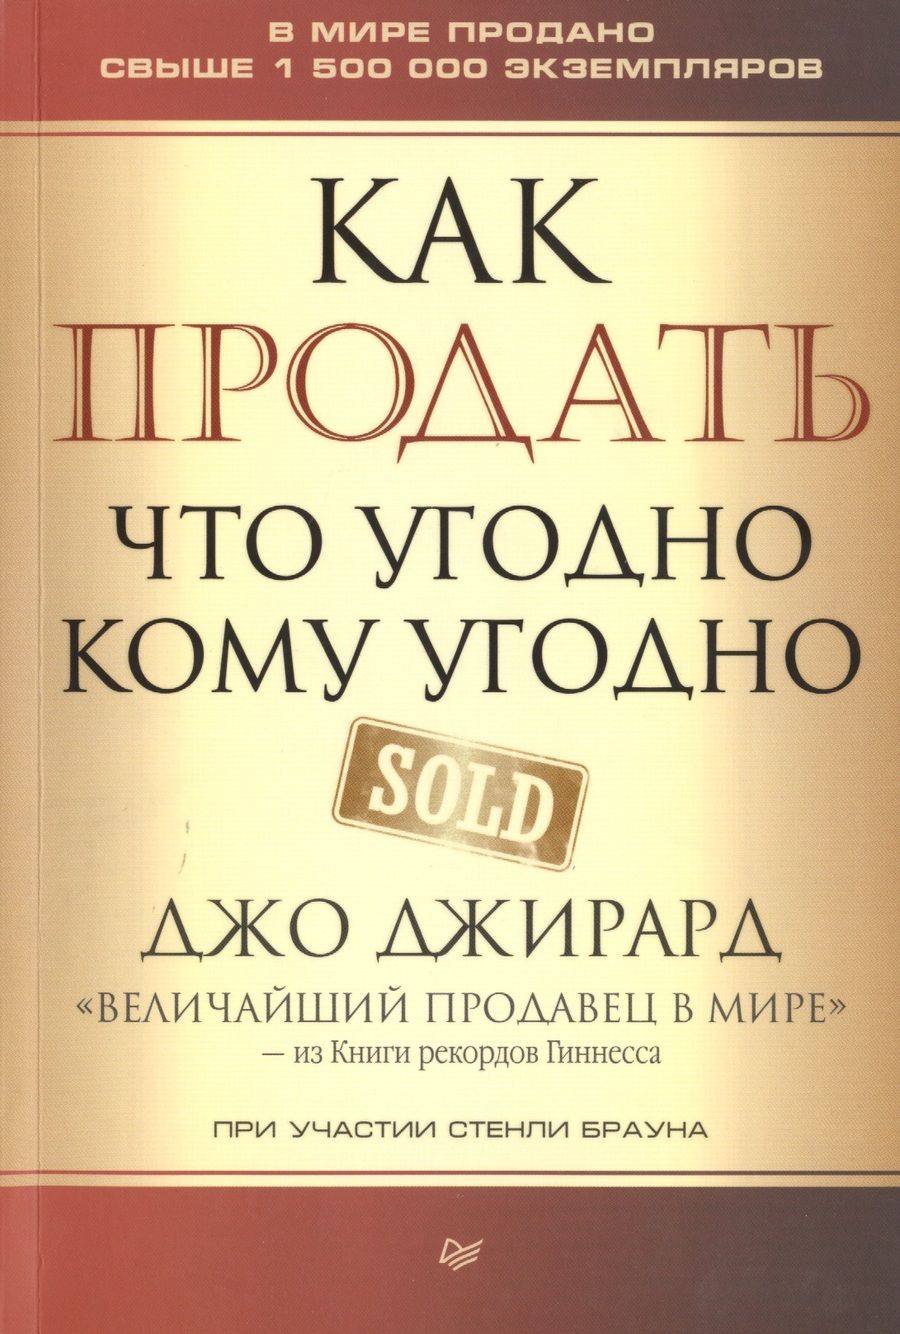 Обложка книги "Джирард, Браун: Как продать что угодно кому угодно"